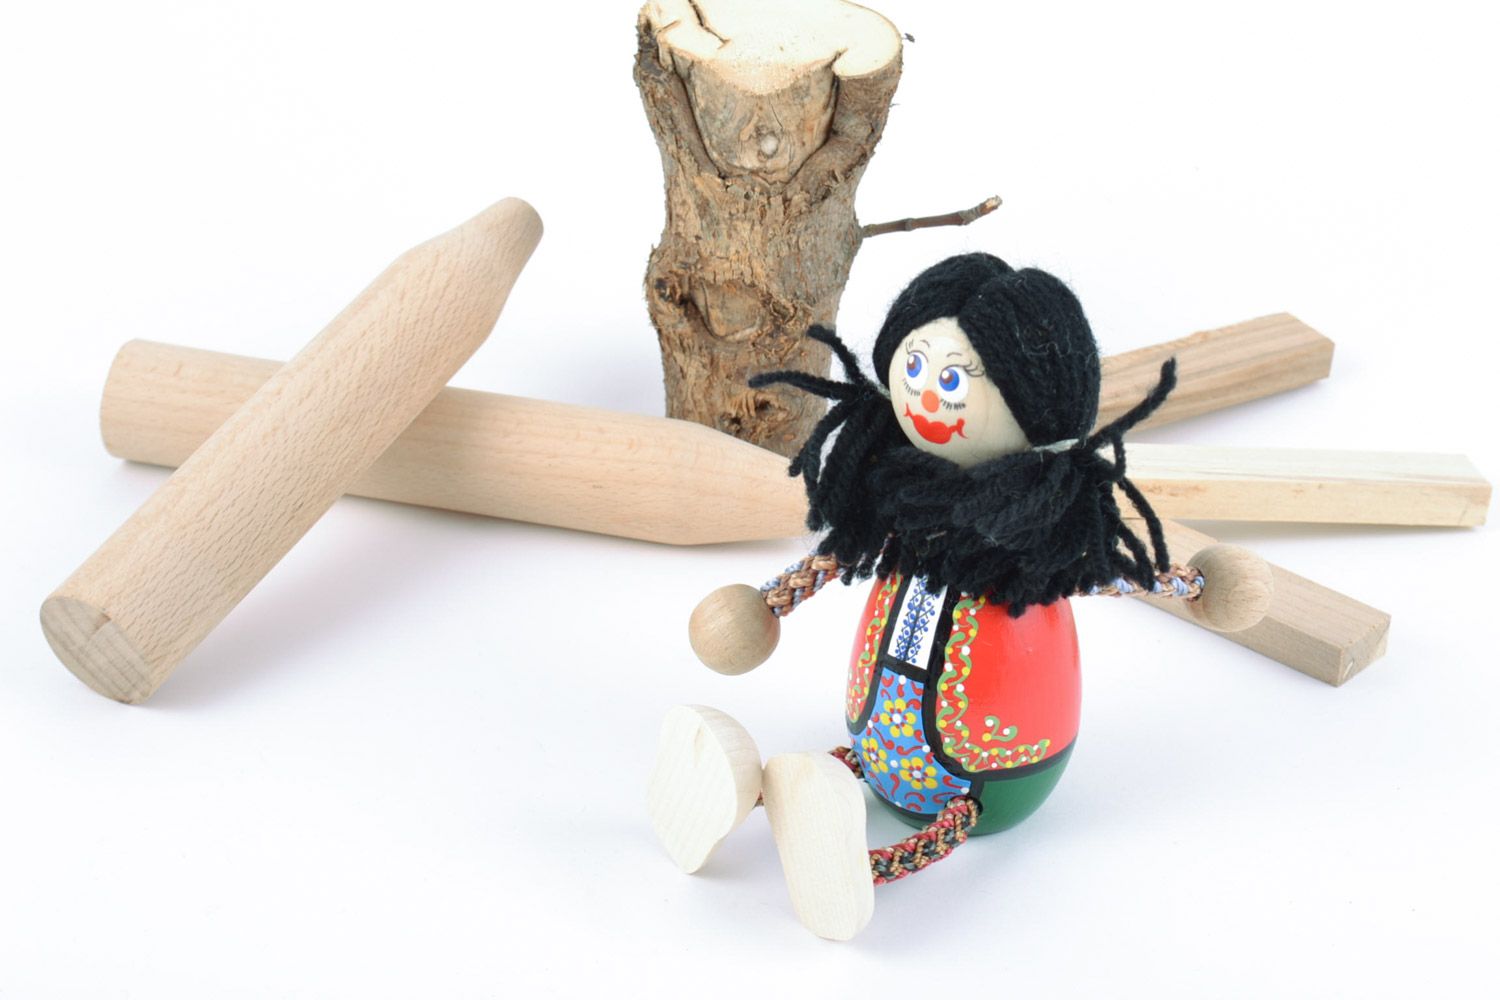 Jouet en bois écologique fait main fillette cheveux longs peint cadeau enfant photo 1